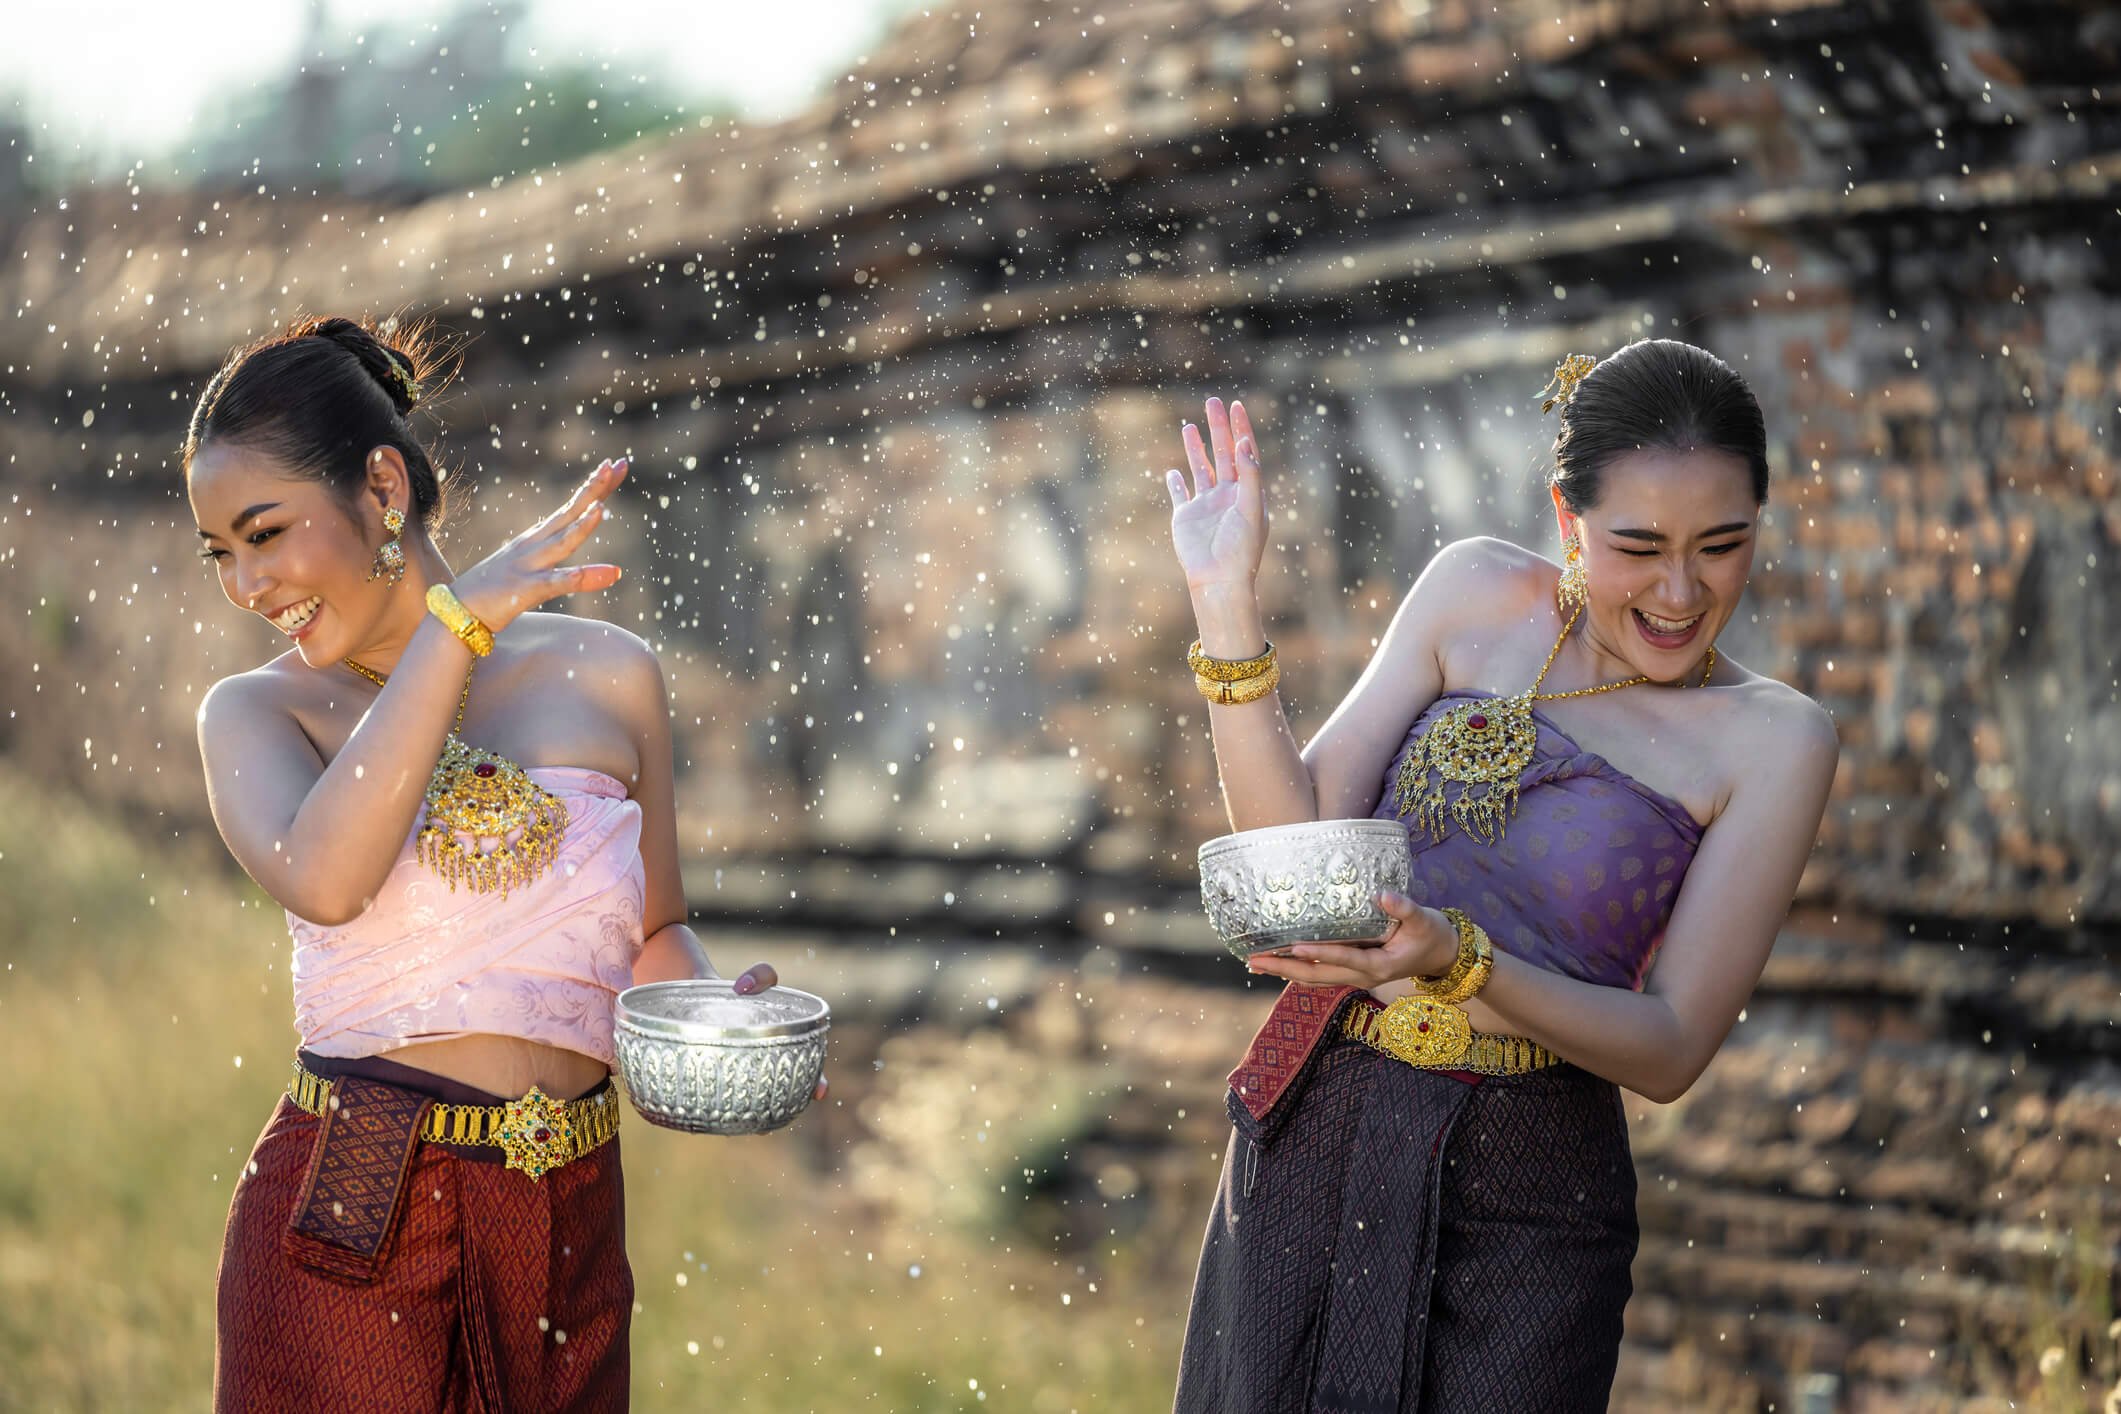 สงกรานต์ไทย ขึ้นแท่นมรดกวัฒนธรรมที่จับต้องไม่ได้ของมนุษยชาติ